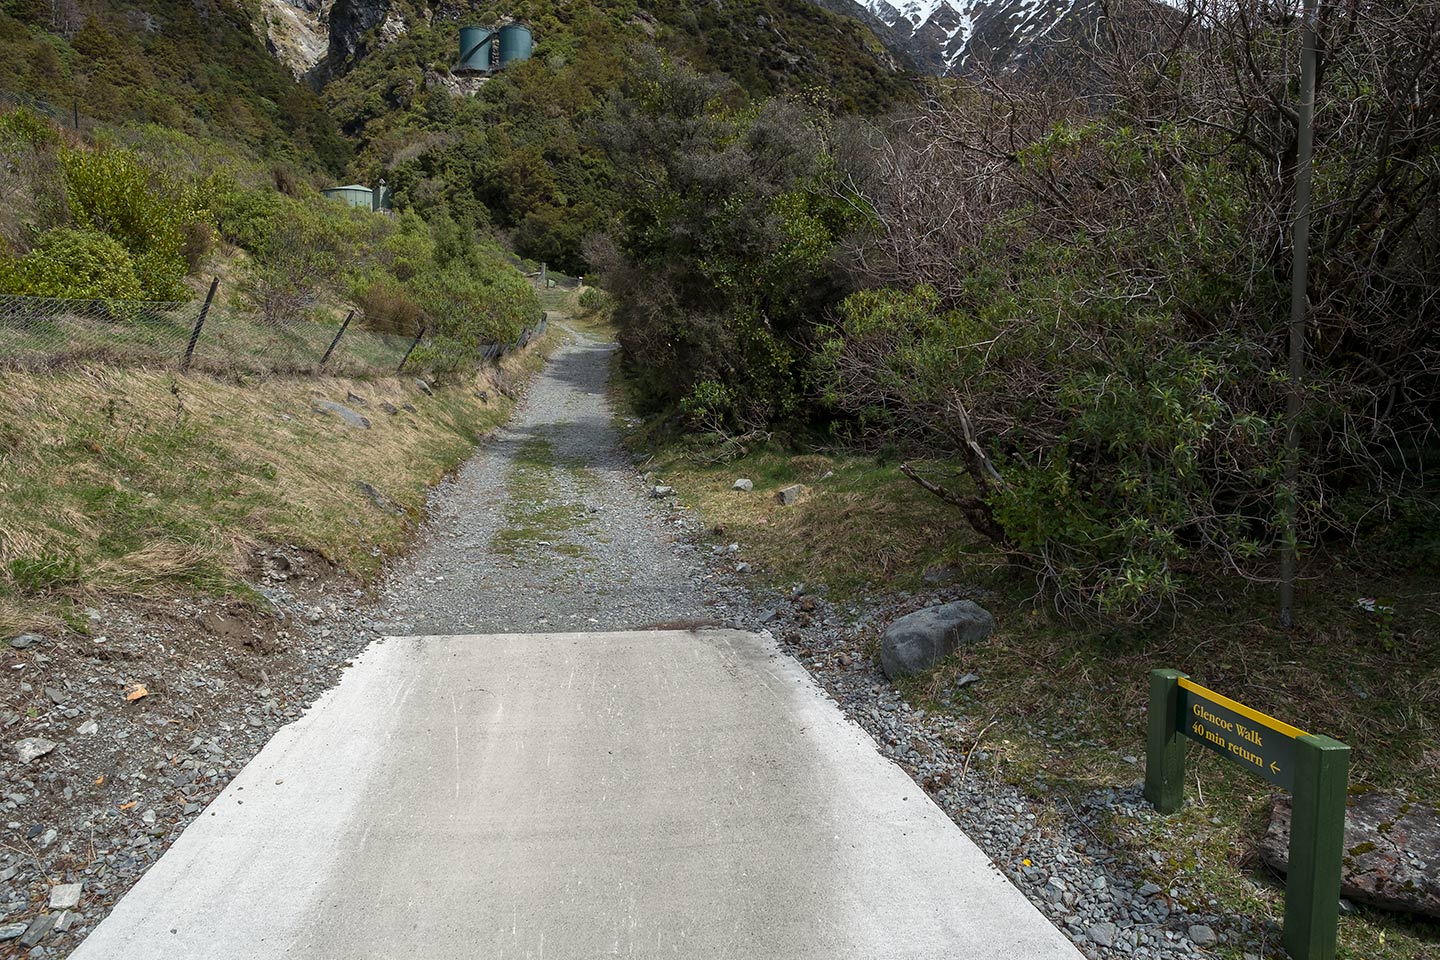 Glencoe Walk, Aoraki Mount Cook National Park, New Zealand